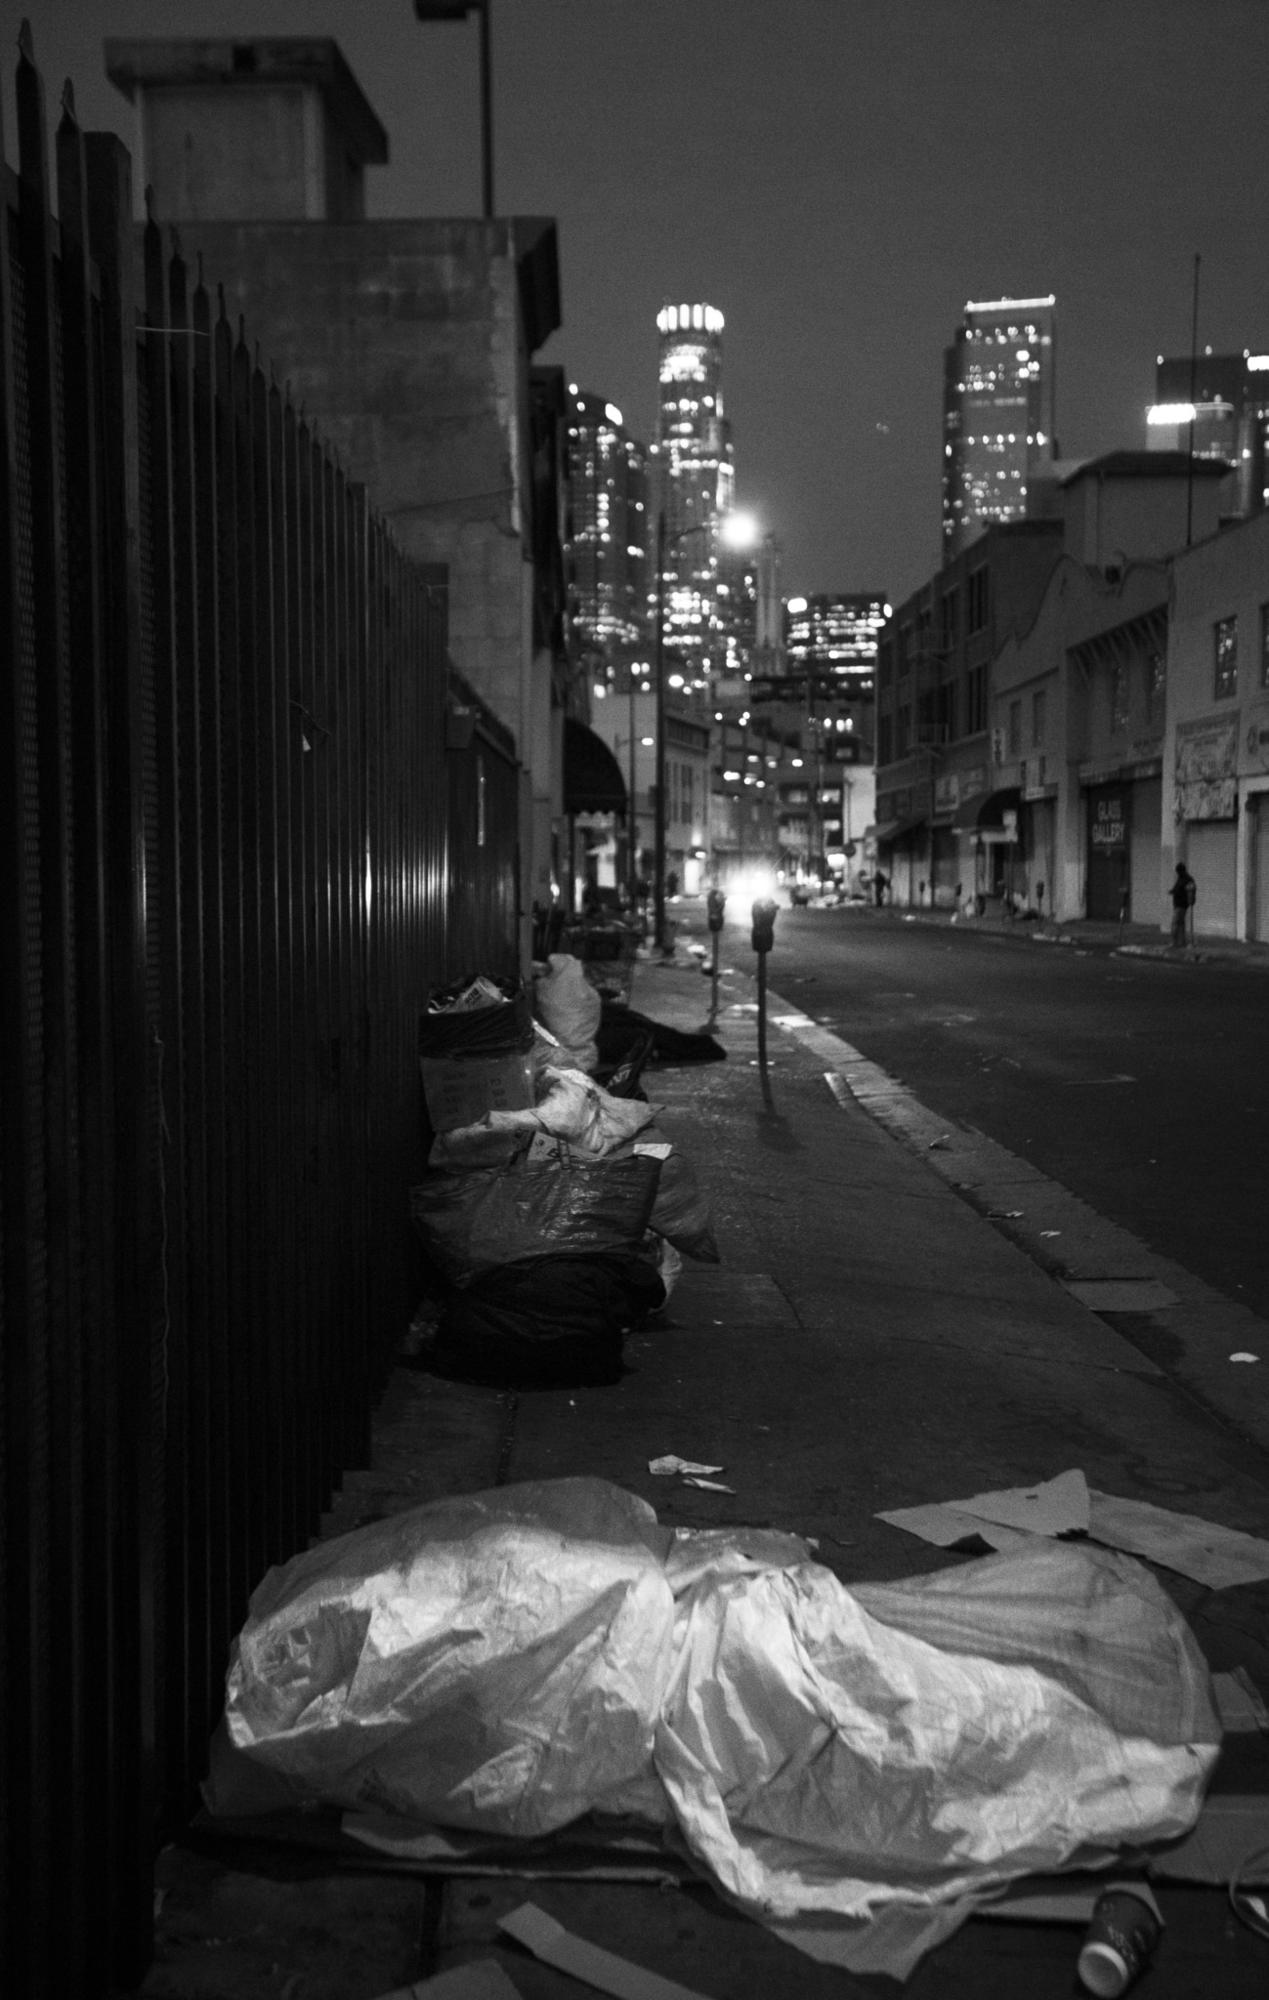 People sleeping on the sidewalk